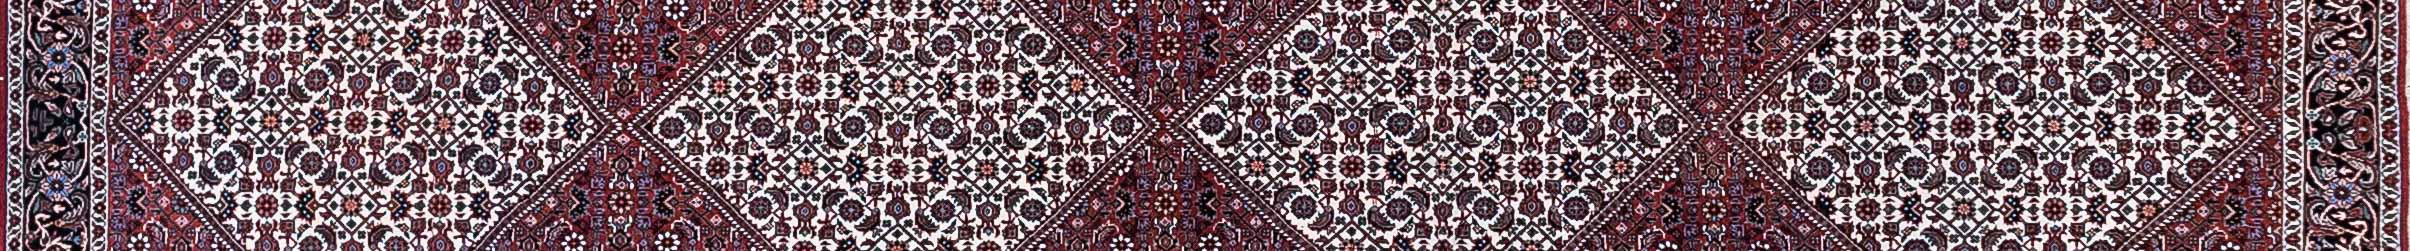 Bidjar Persian Carpet Rug N1Carpet Canada Montreal Tapis Persan 2550